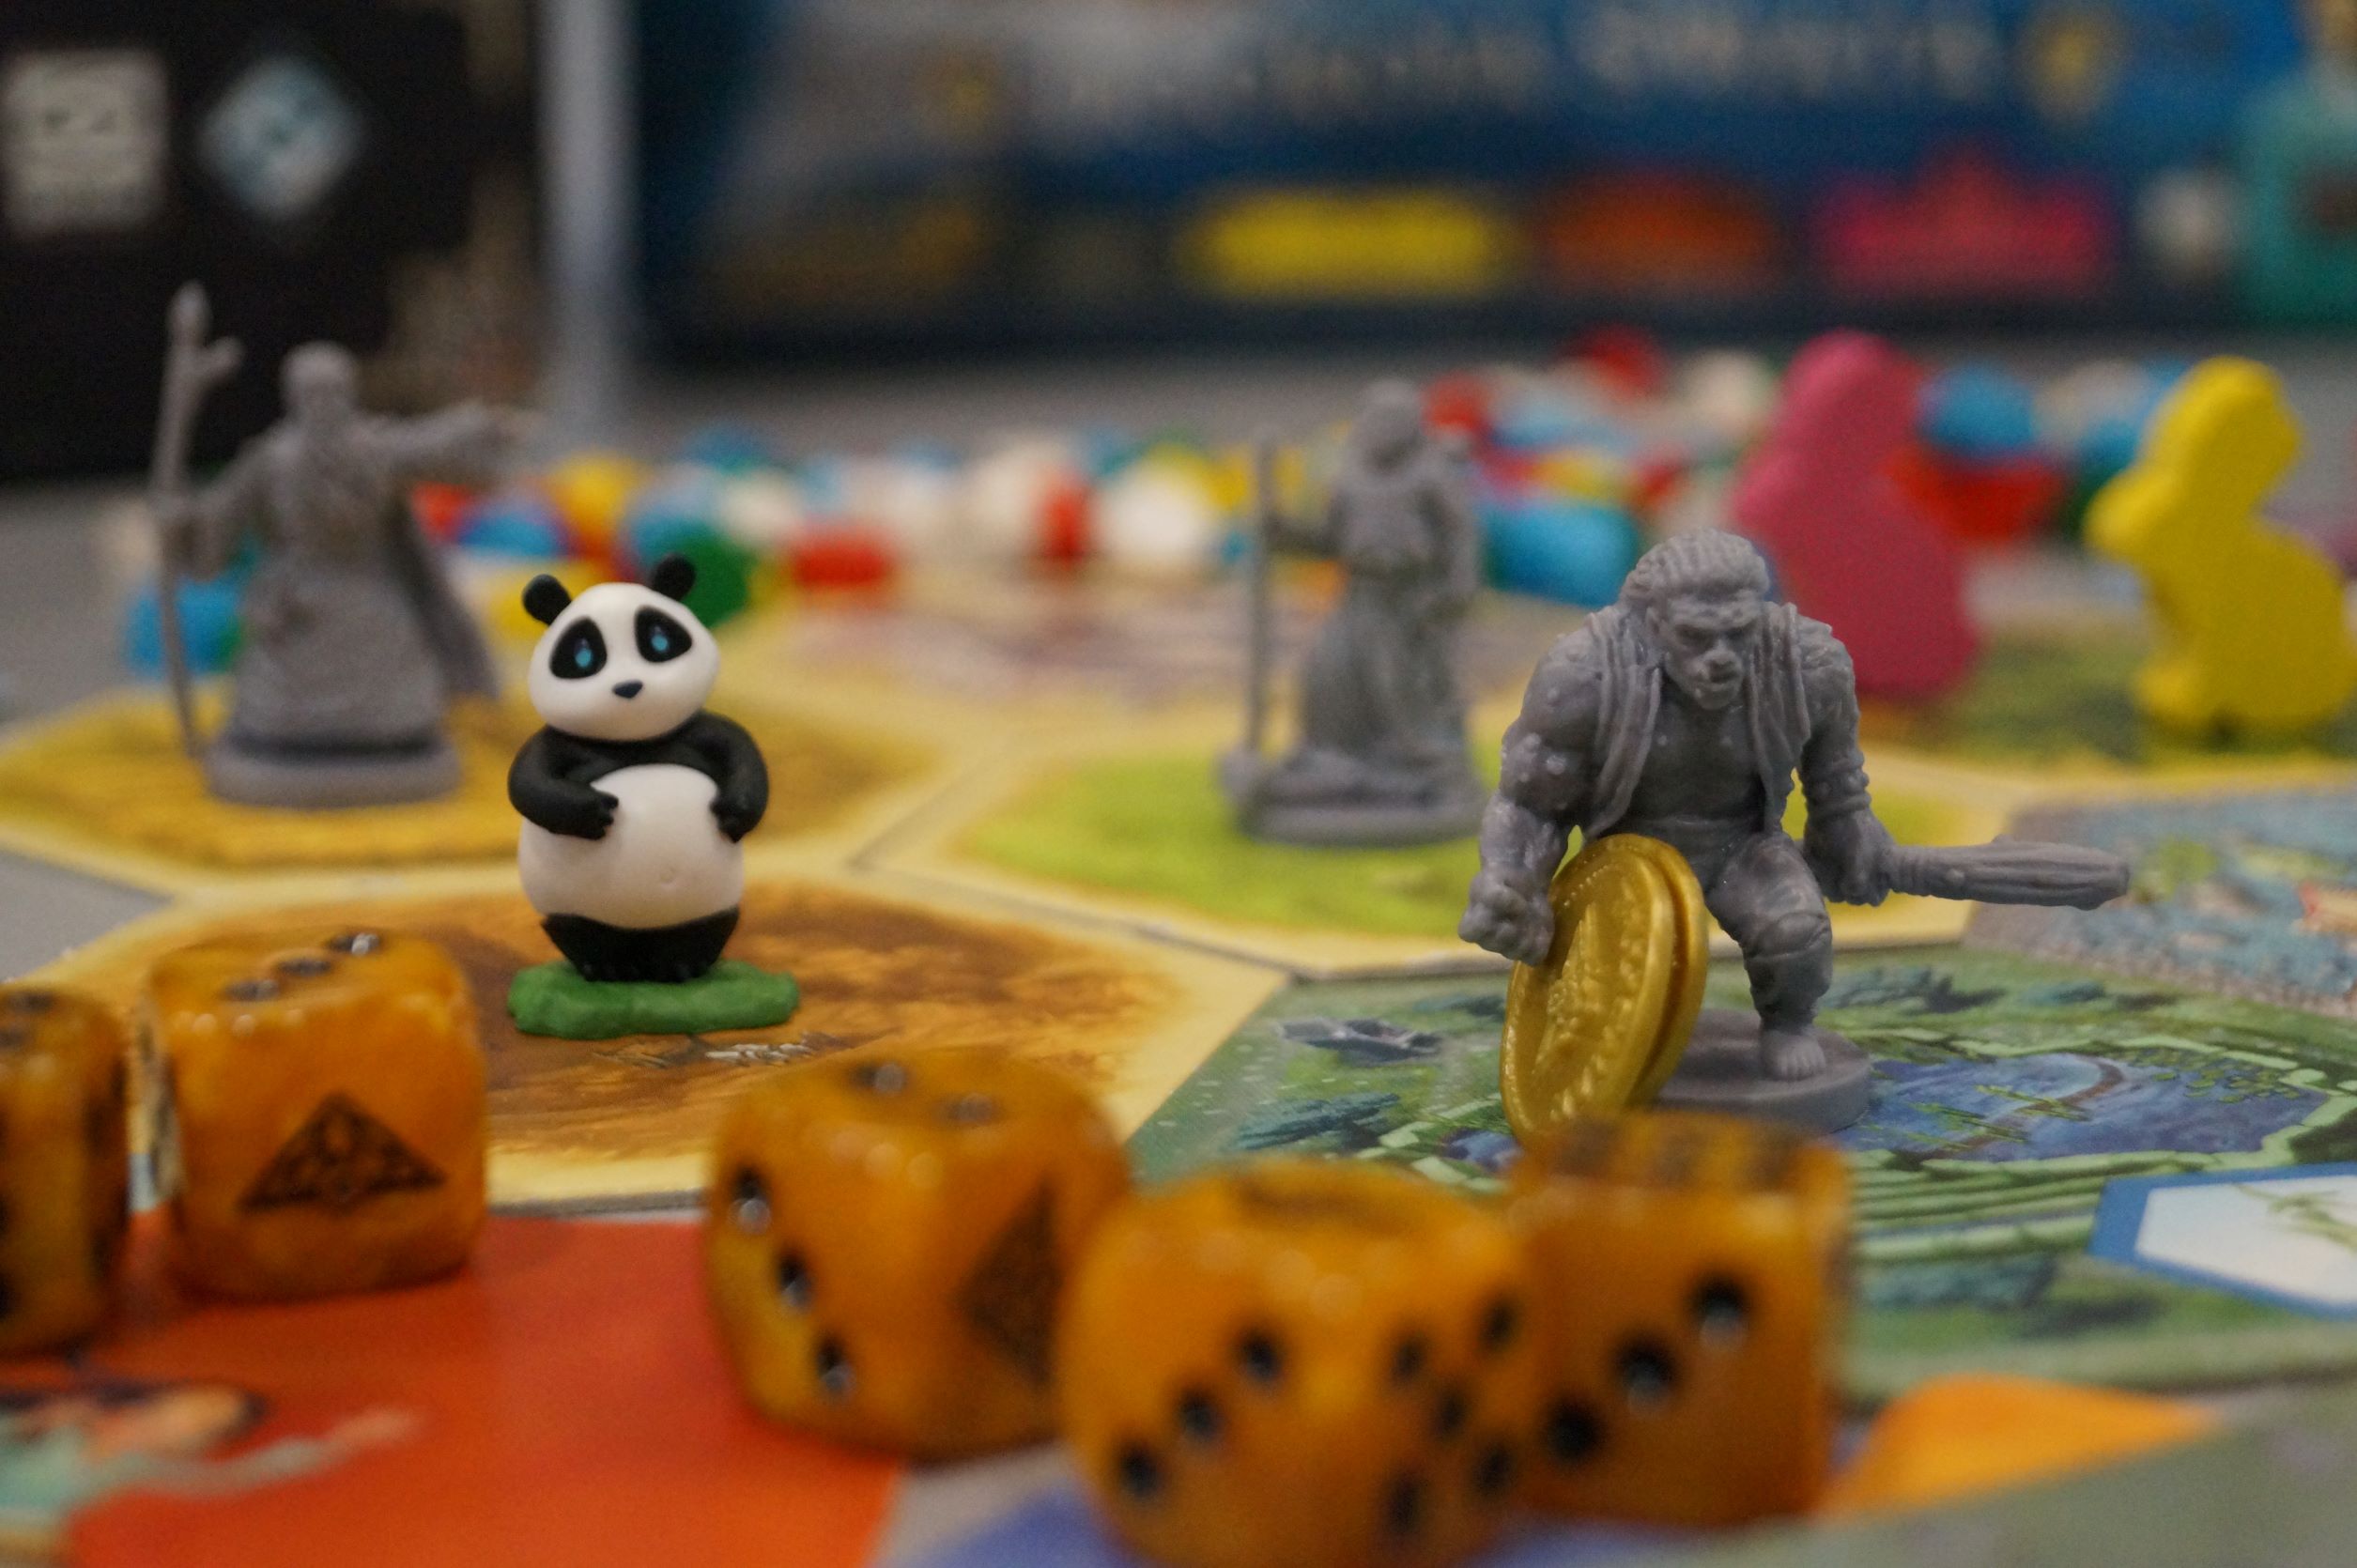 Plansza do gry. Na pierwszym planie stoją dwie figurki - miś panda i wojownik.